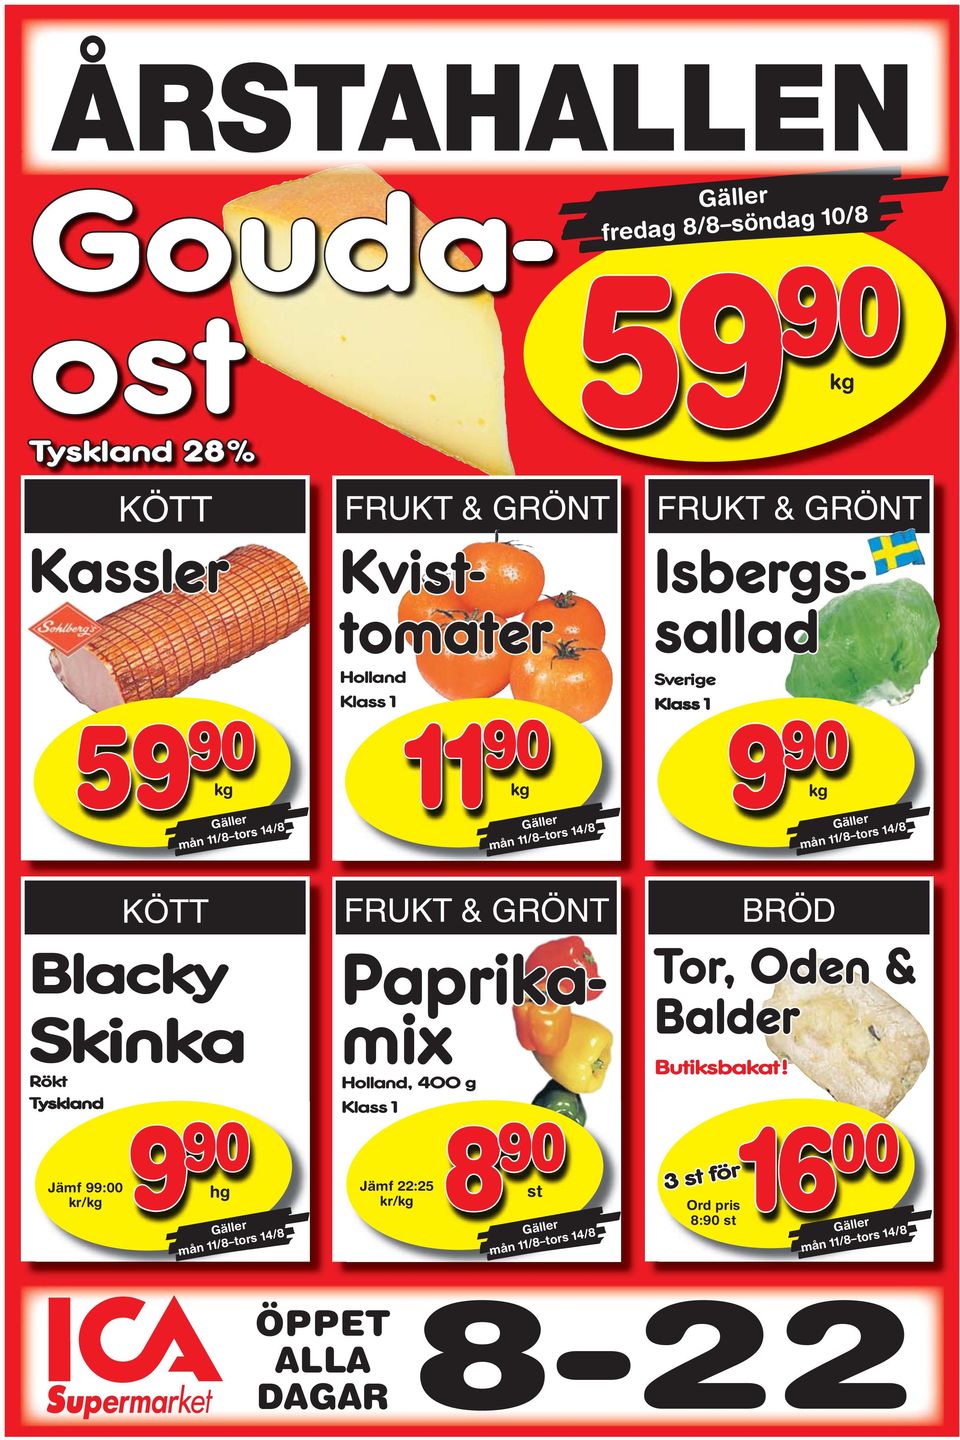 hg Gäller mån 11/8 tors 14/8 FUK & GÖN Gouda- ost Isbergs- sallad Kvist- tomater Paprika- mix Holland, 400 g Klass 1 Jämf 22:25 kr/kg 90